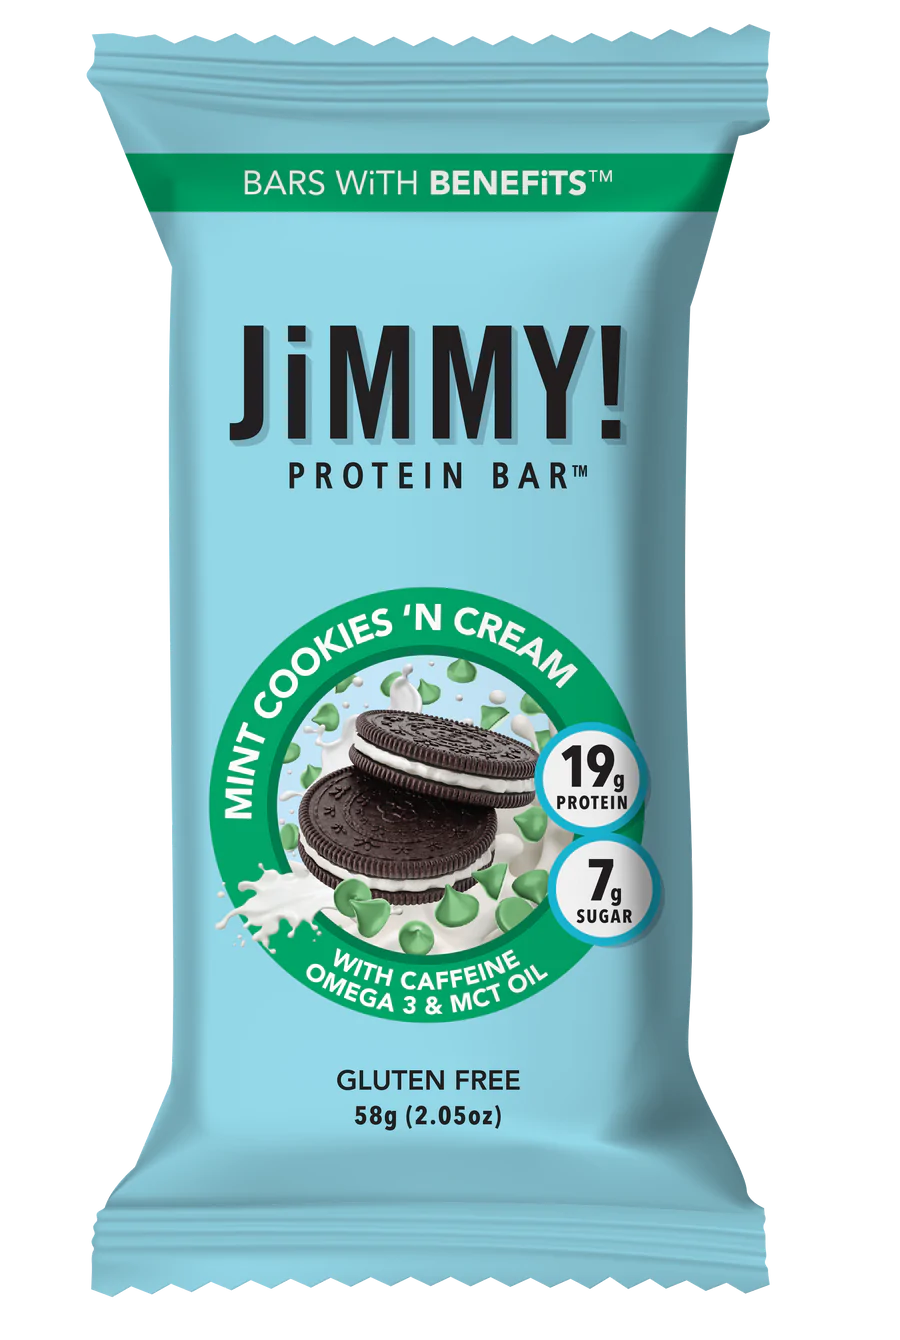 JiMMY! Mint Cookies 'N Cream (Wake & Focus) 12 innerpacks per case 2.1 oz